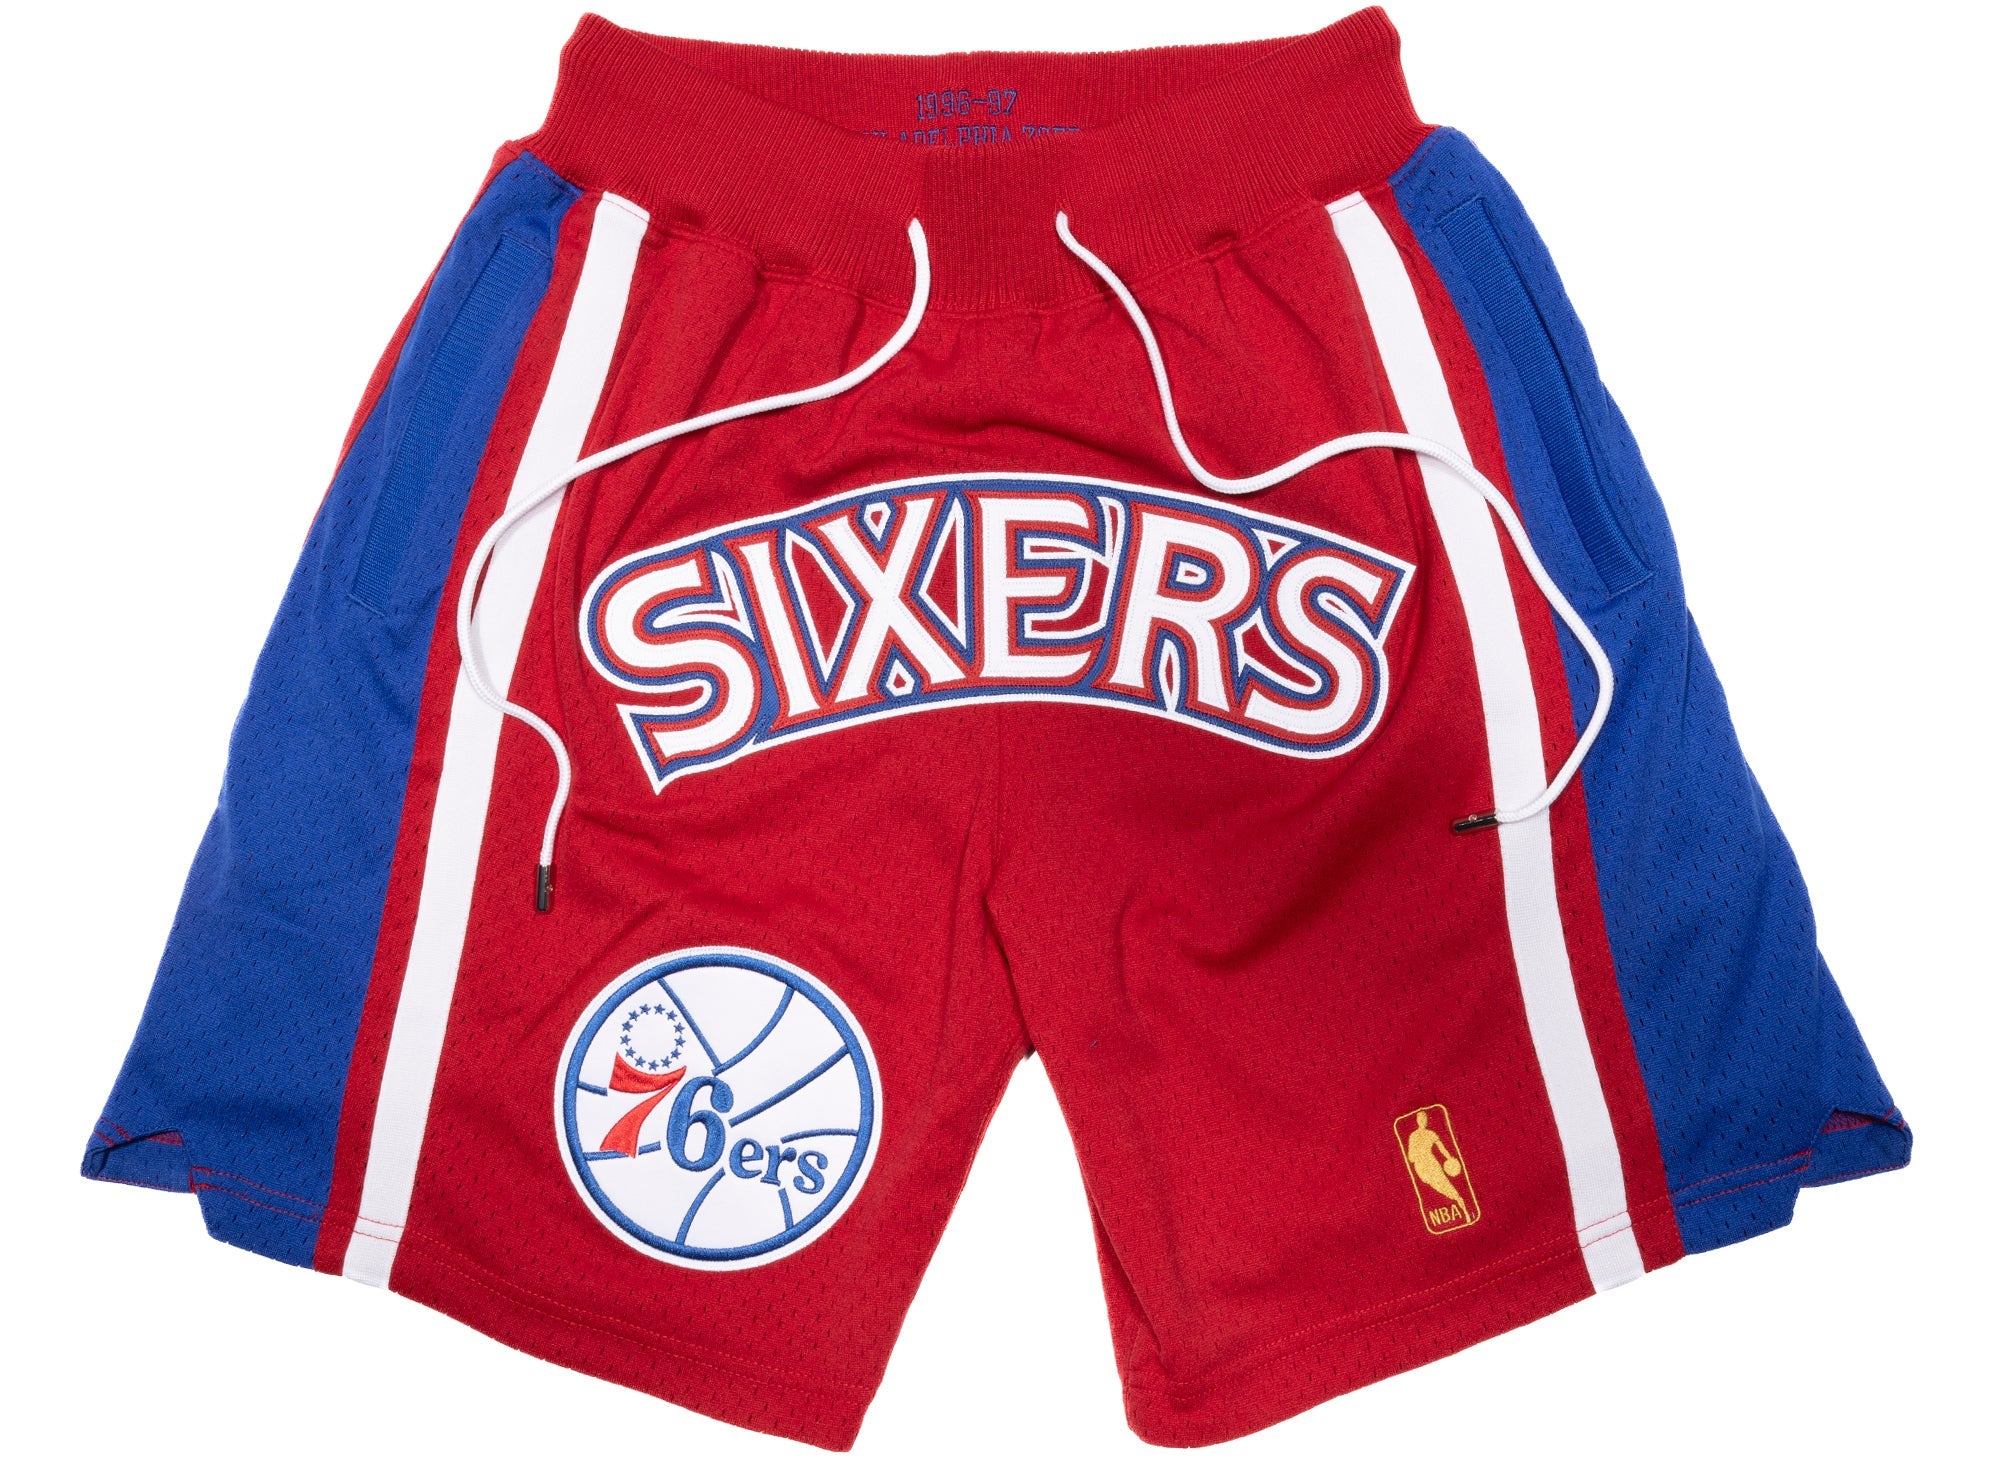 NBA Shorts Vintage Basketball Shorts Knicks Lakers 76ers 